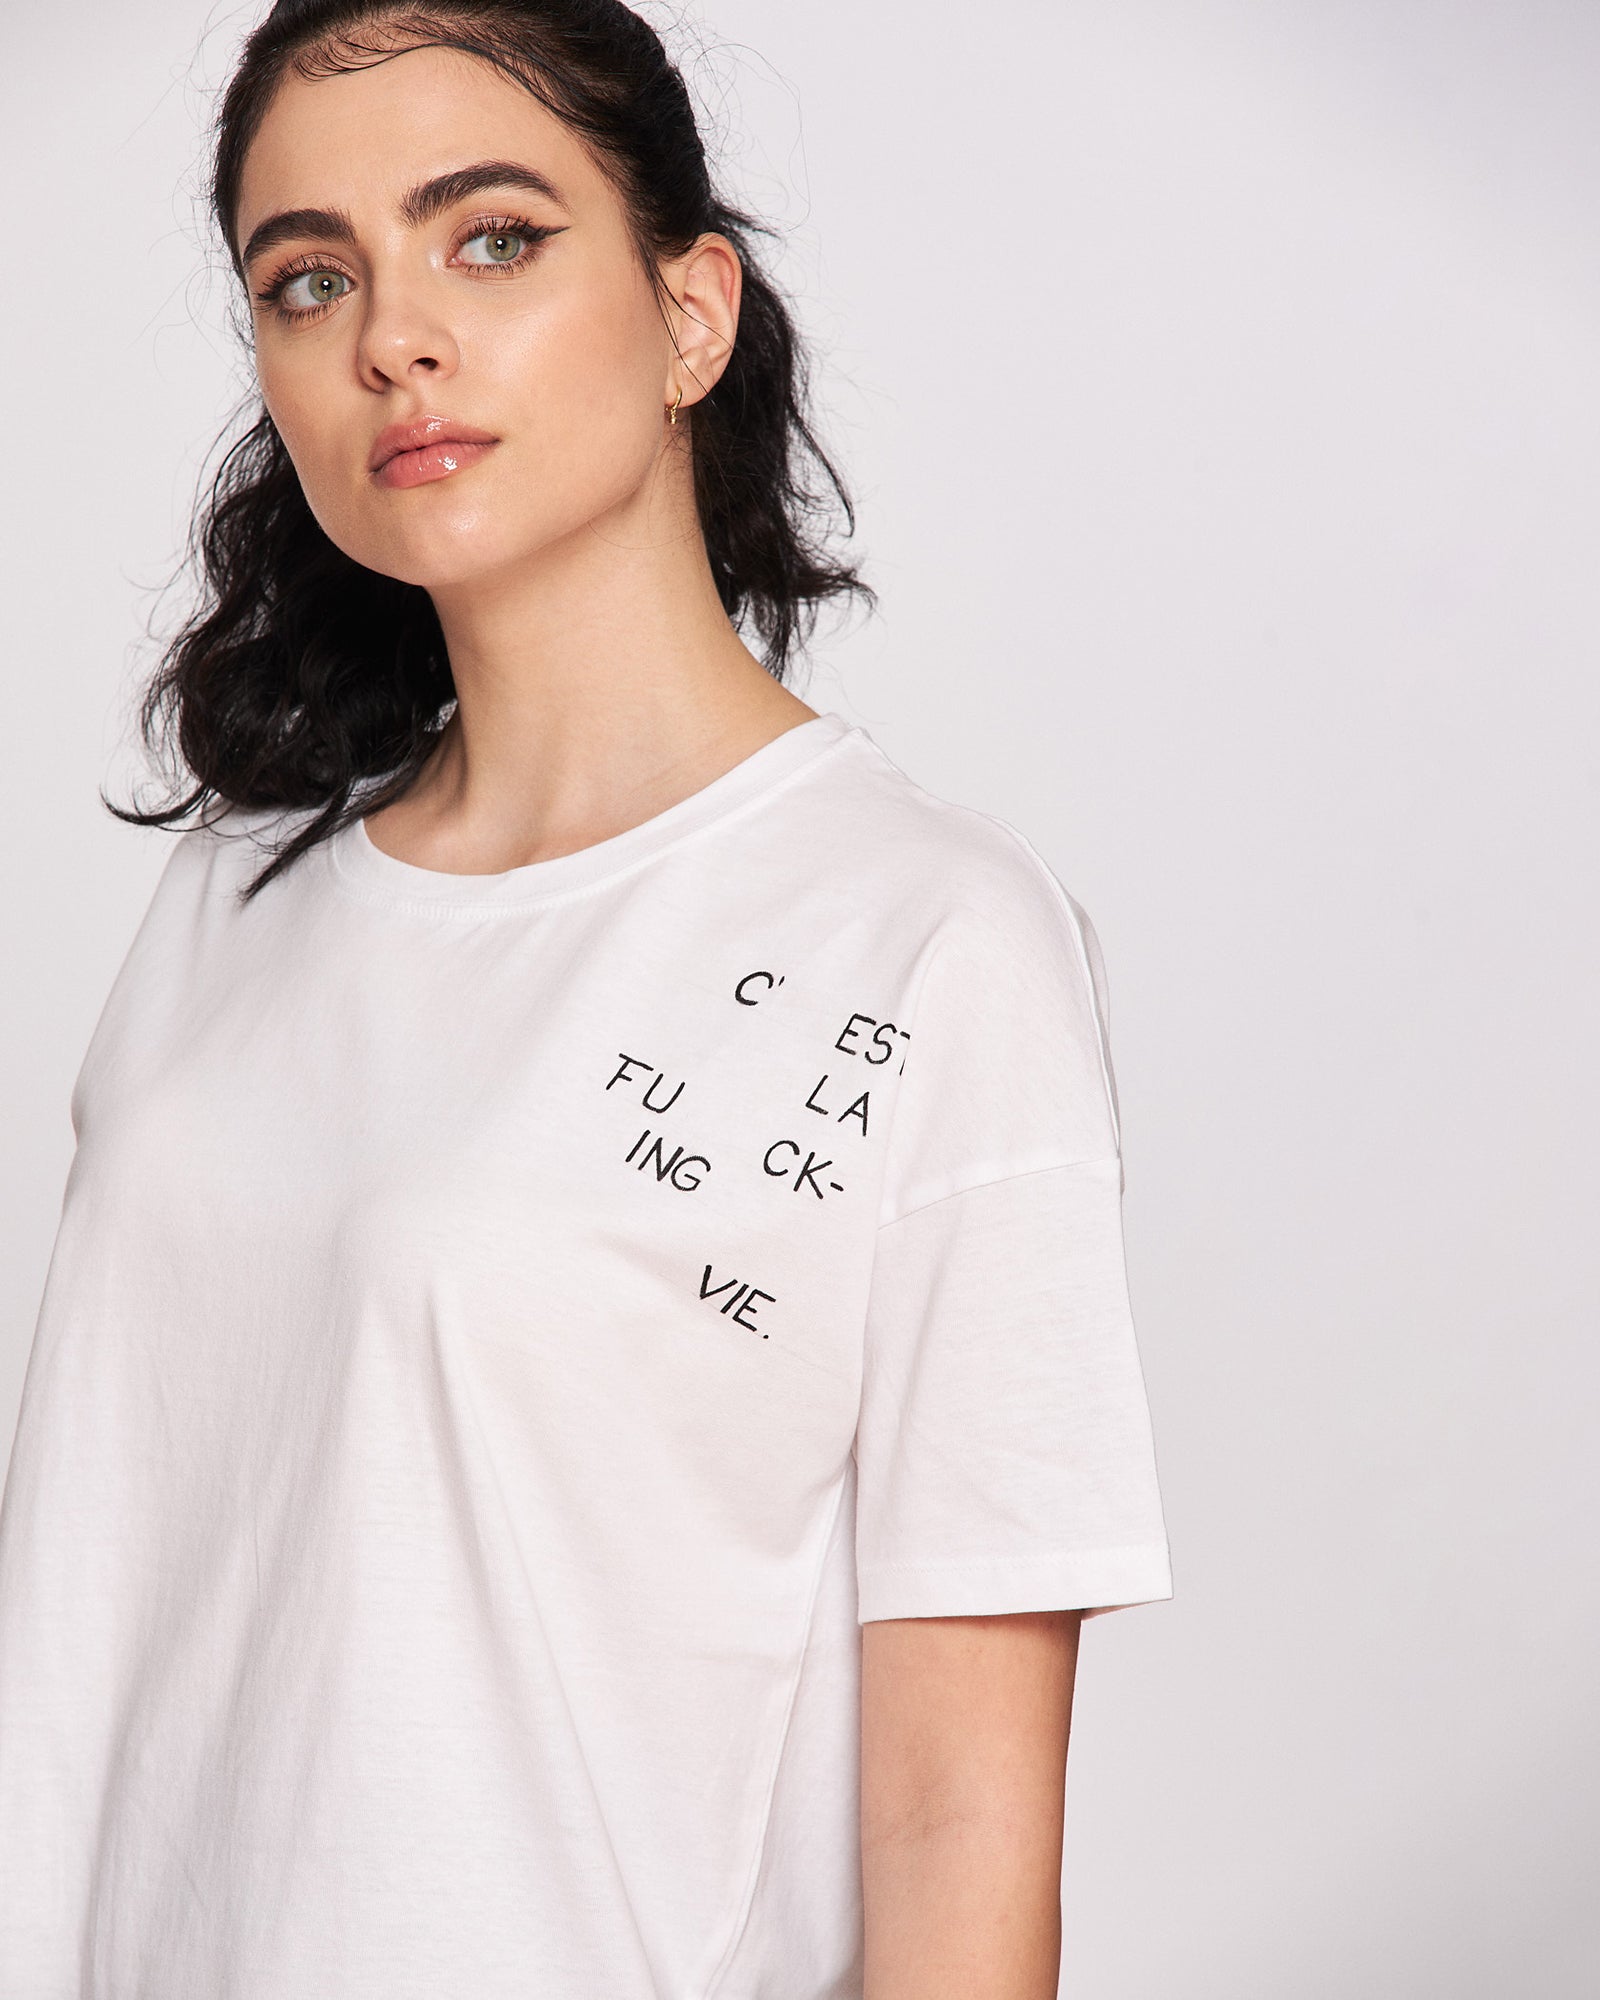 Women's T-shirt "C'est la Vie"